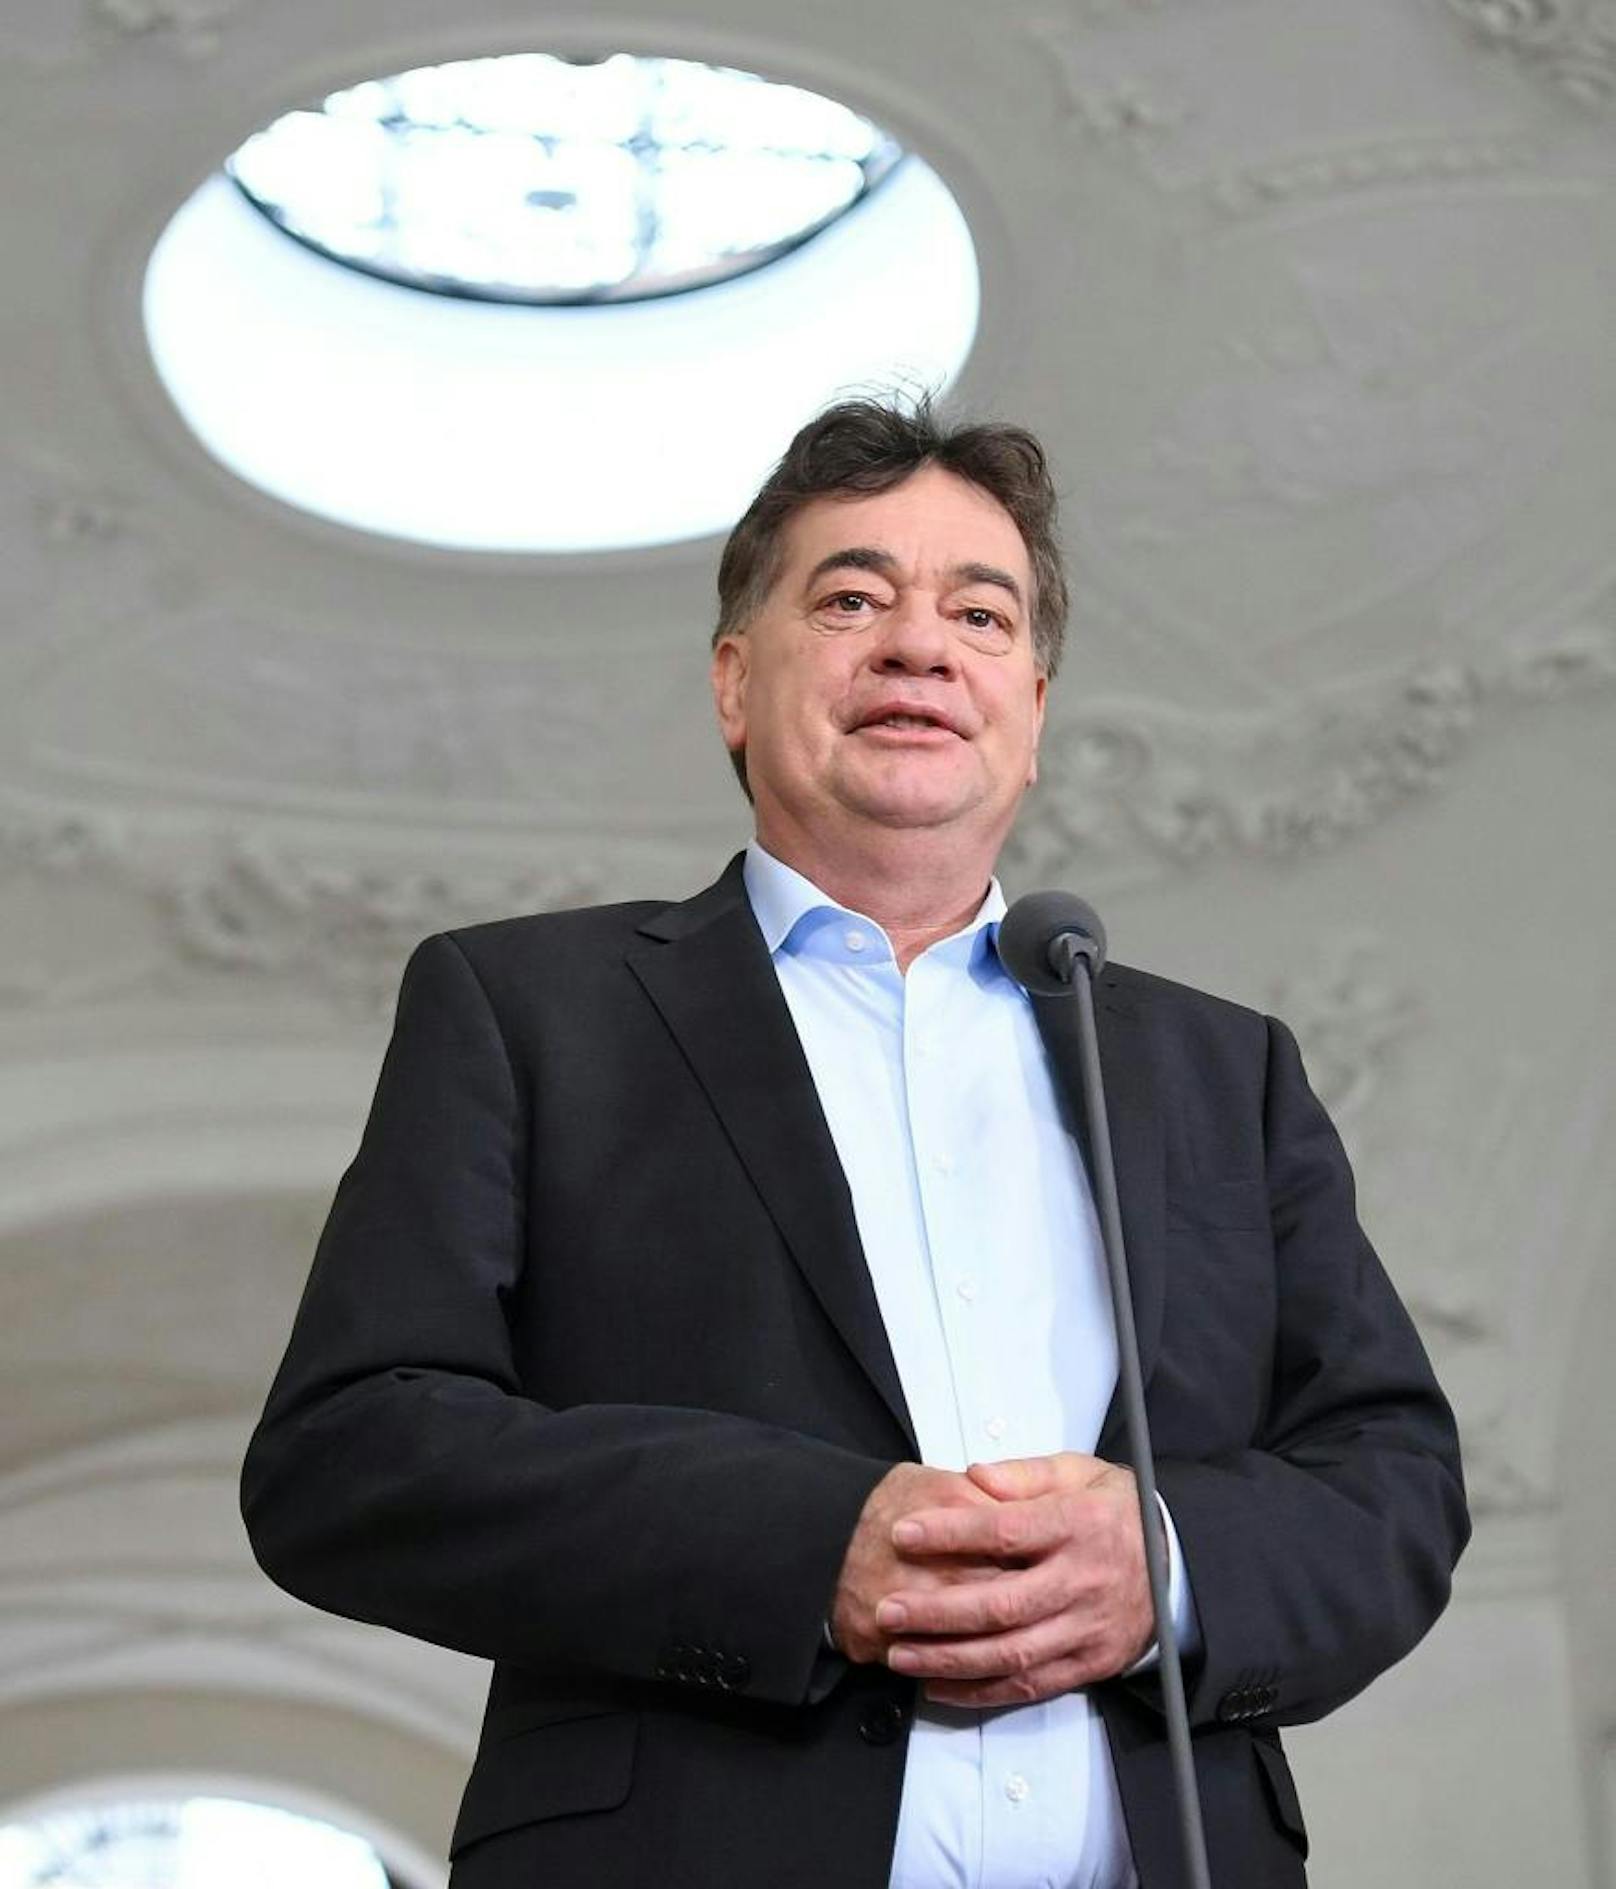 ÖVP-Obmann Sebastian Kurz am Dienstag, 29. Oktober 2019, anlässlich eines Sondierungsgesprächs der ÖVP mit den Grünen in Wien: Inzwischen befinden sich die Koalitionsverhandlungen auf der Zielgeraden.